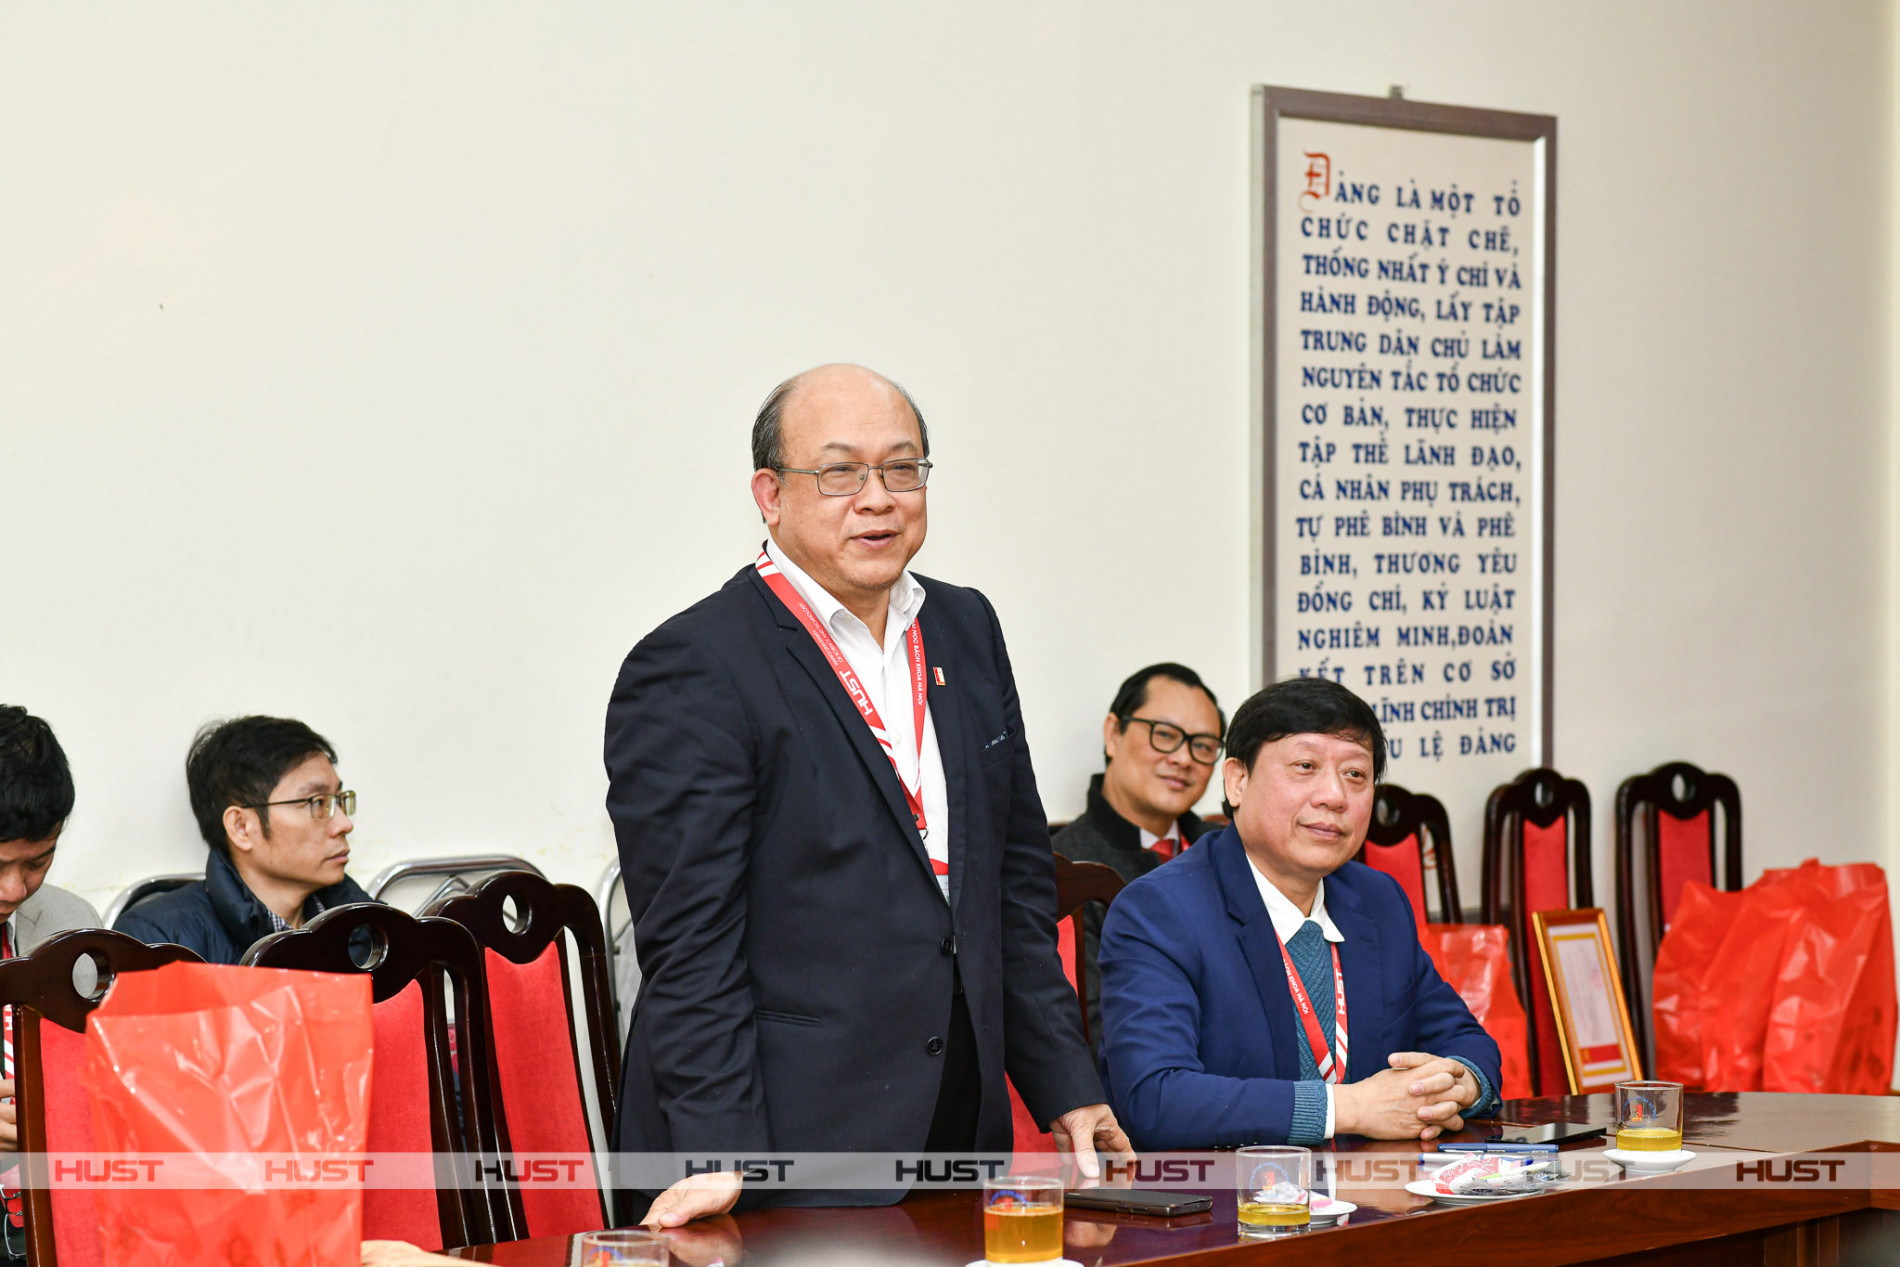 PGS. Huỳnh Quyết Thắng – Phó Bí thư Đảng ủy, Giám đốc ĐHBK Hà Nội phát biểu tại buổi gặp mặt ngày 29/2.